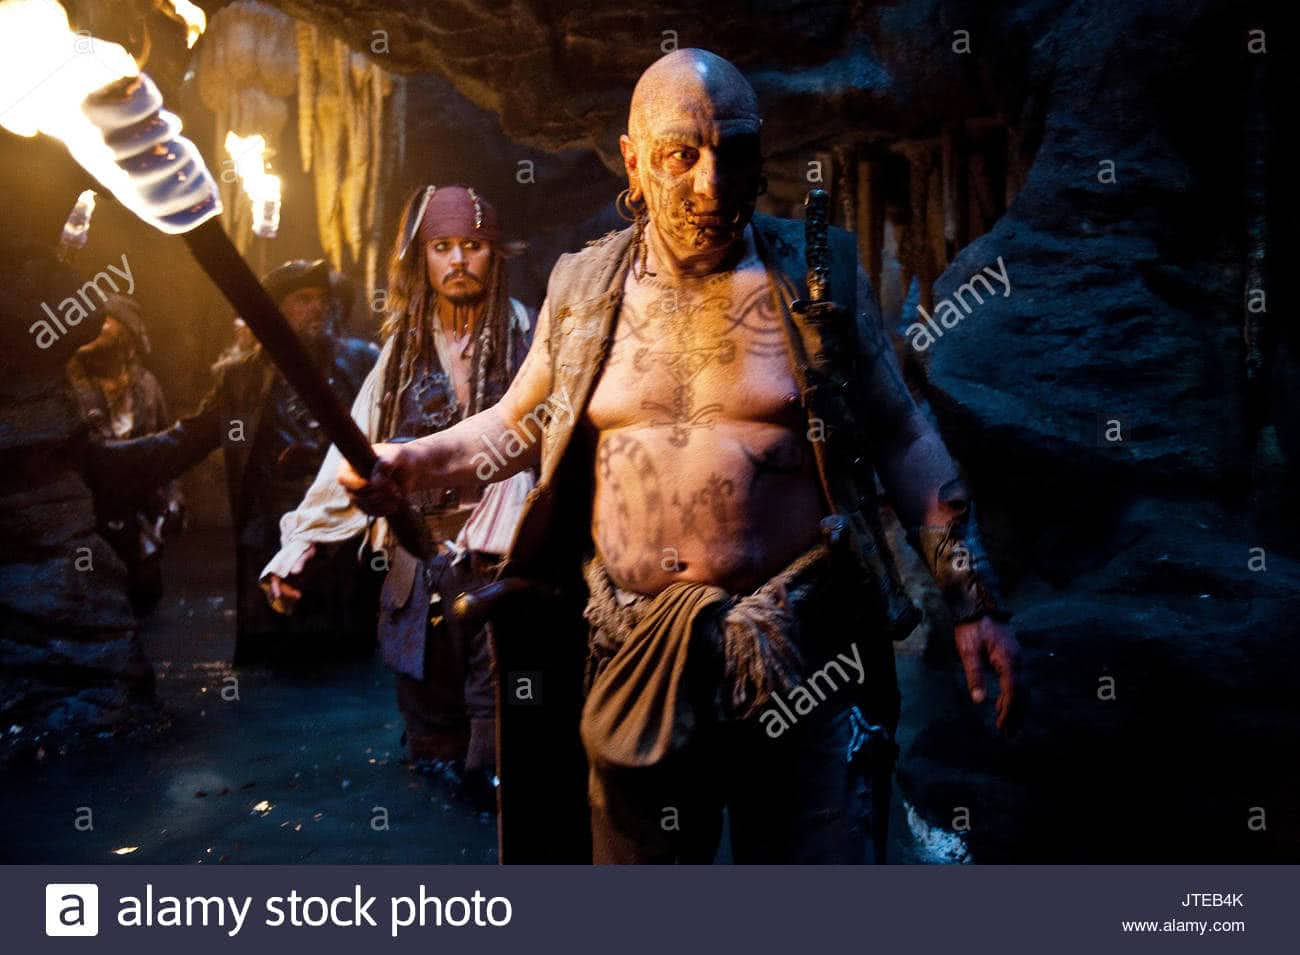 Ian Mercer (David Schofield) em Piratas do Caribe (Reprodução)